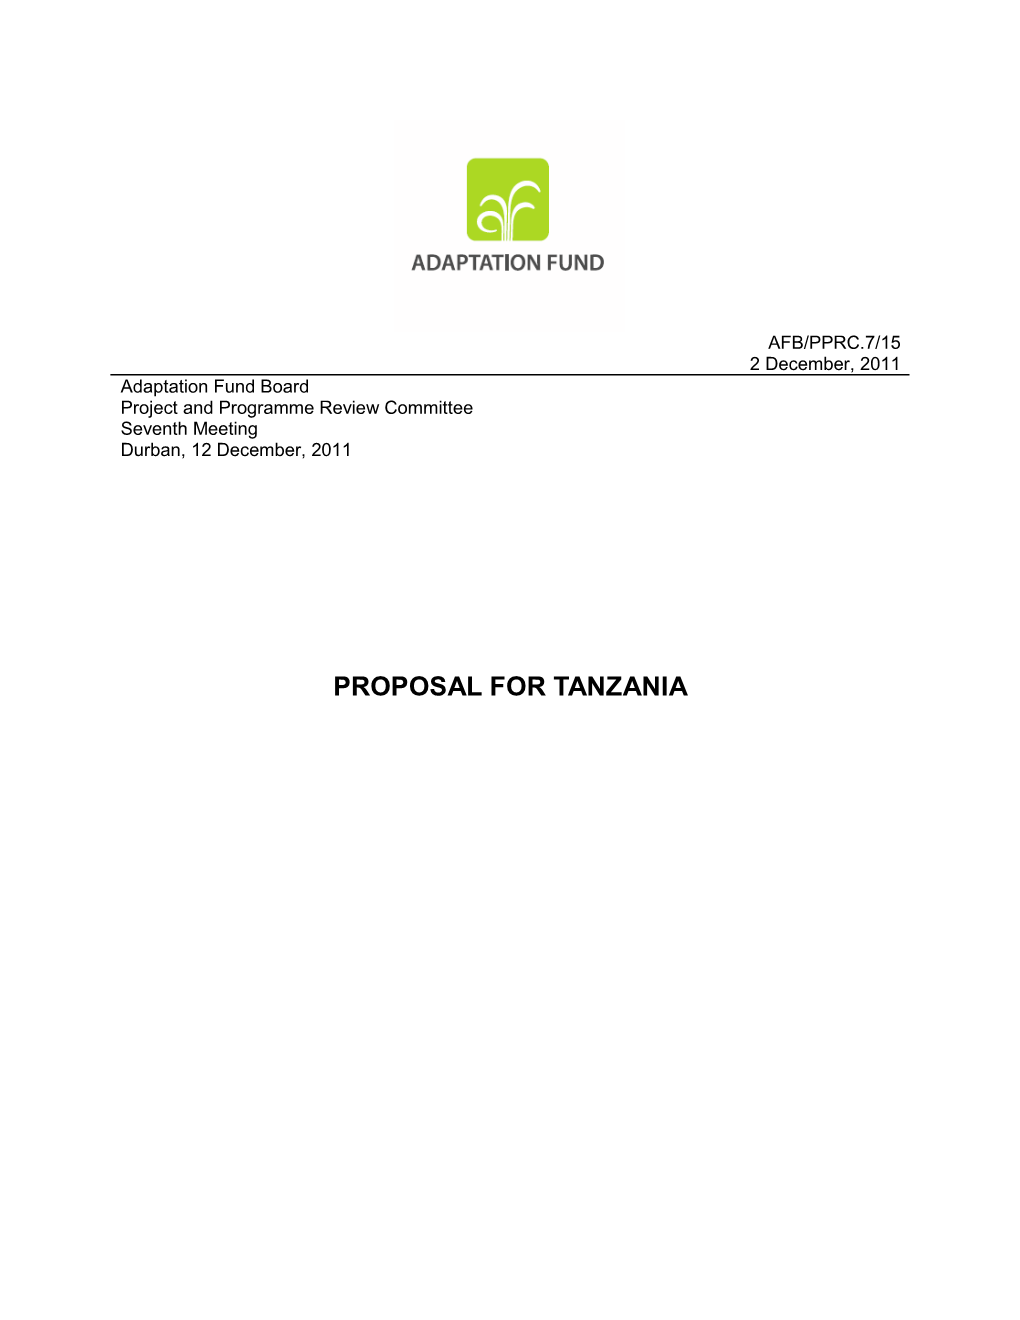 Proposal for Tanzania